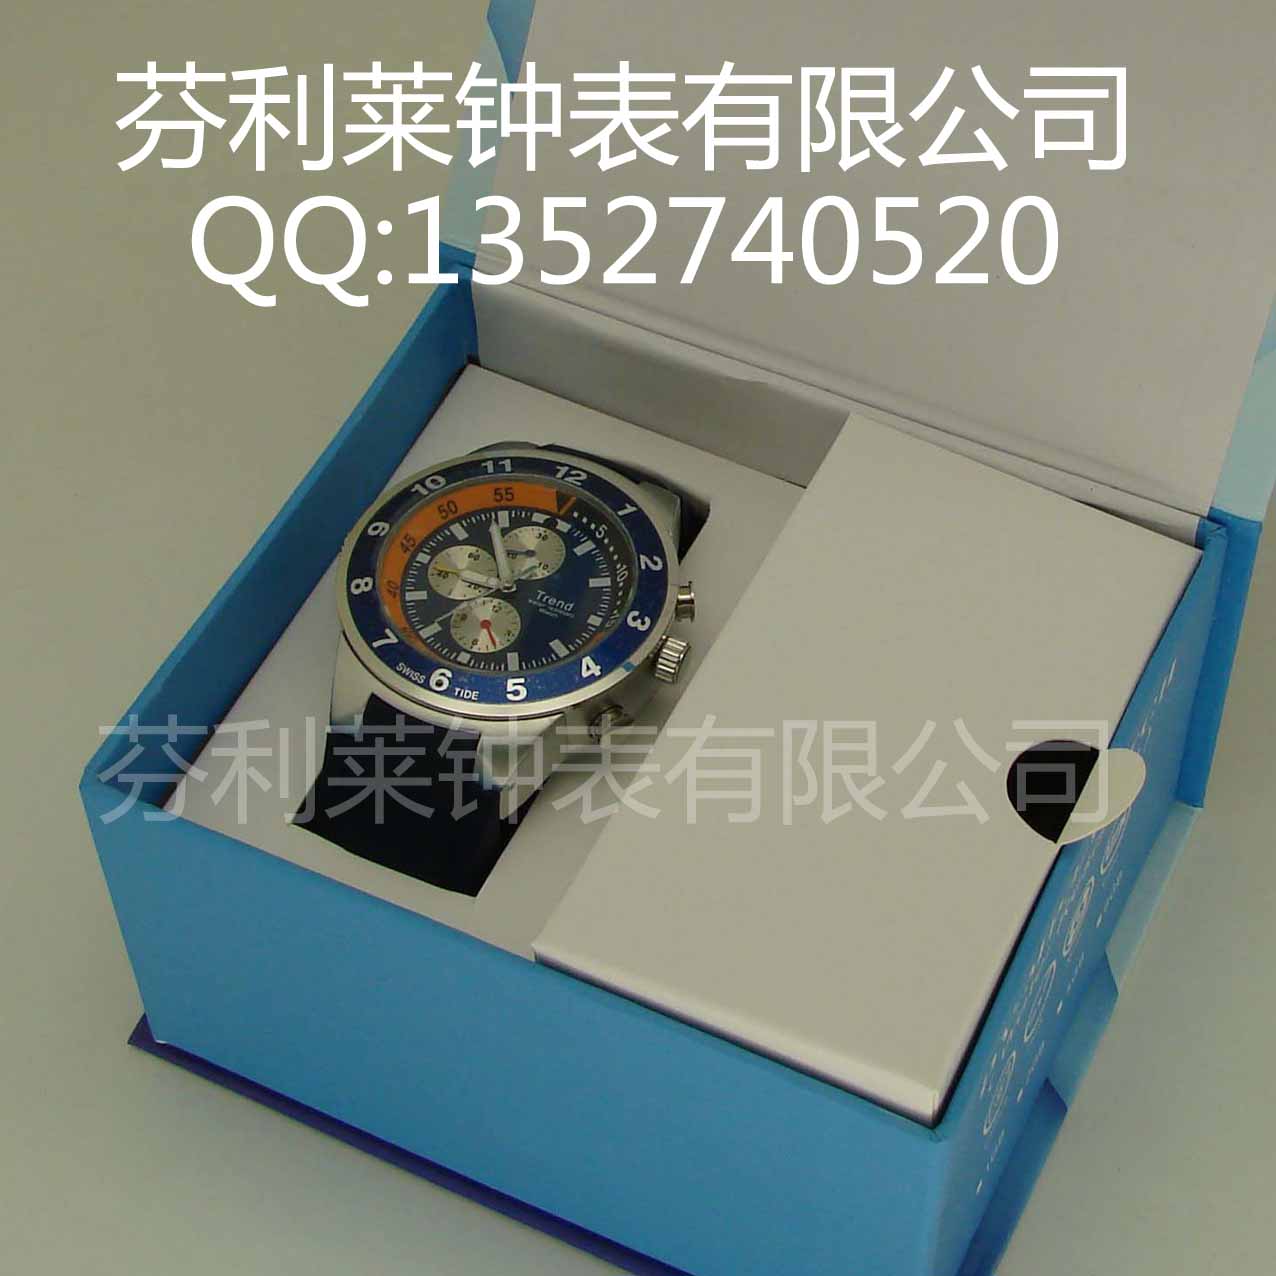 深圳钟表厂专业生产定做手表.钟表.MP3手表批发.礼品表供应商